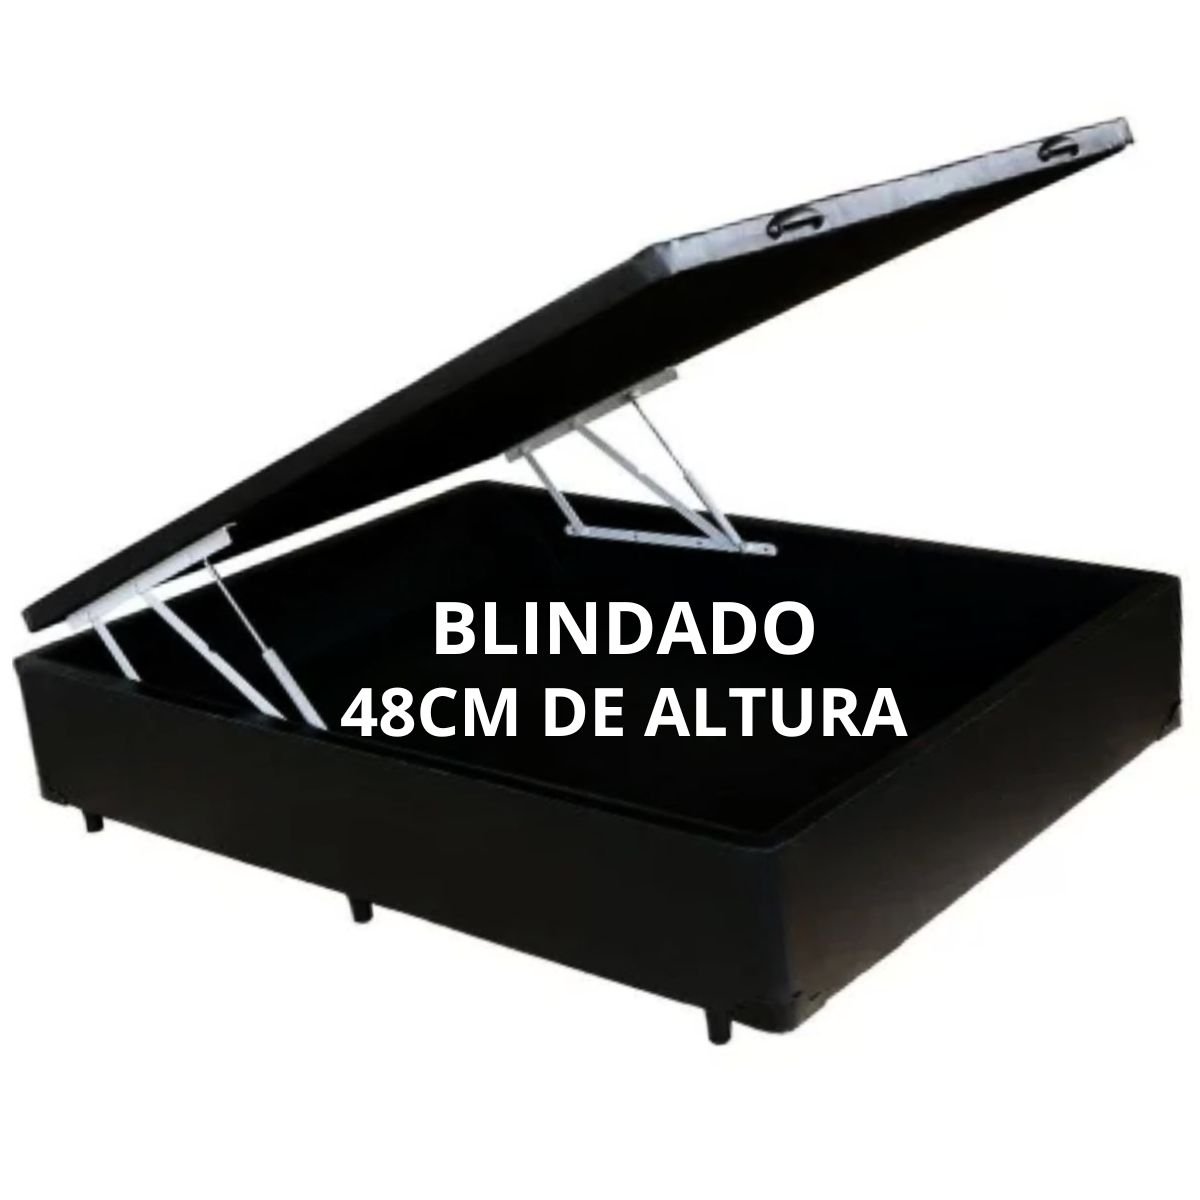 Cama Box Baú Casal 138 X 188 com 48cm de Altura Total - Reforçado / Corino Preto - 3